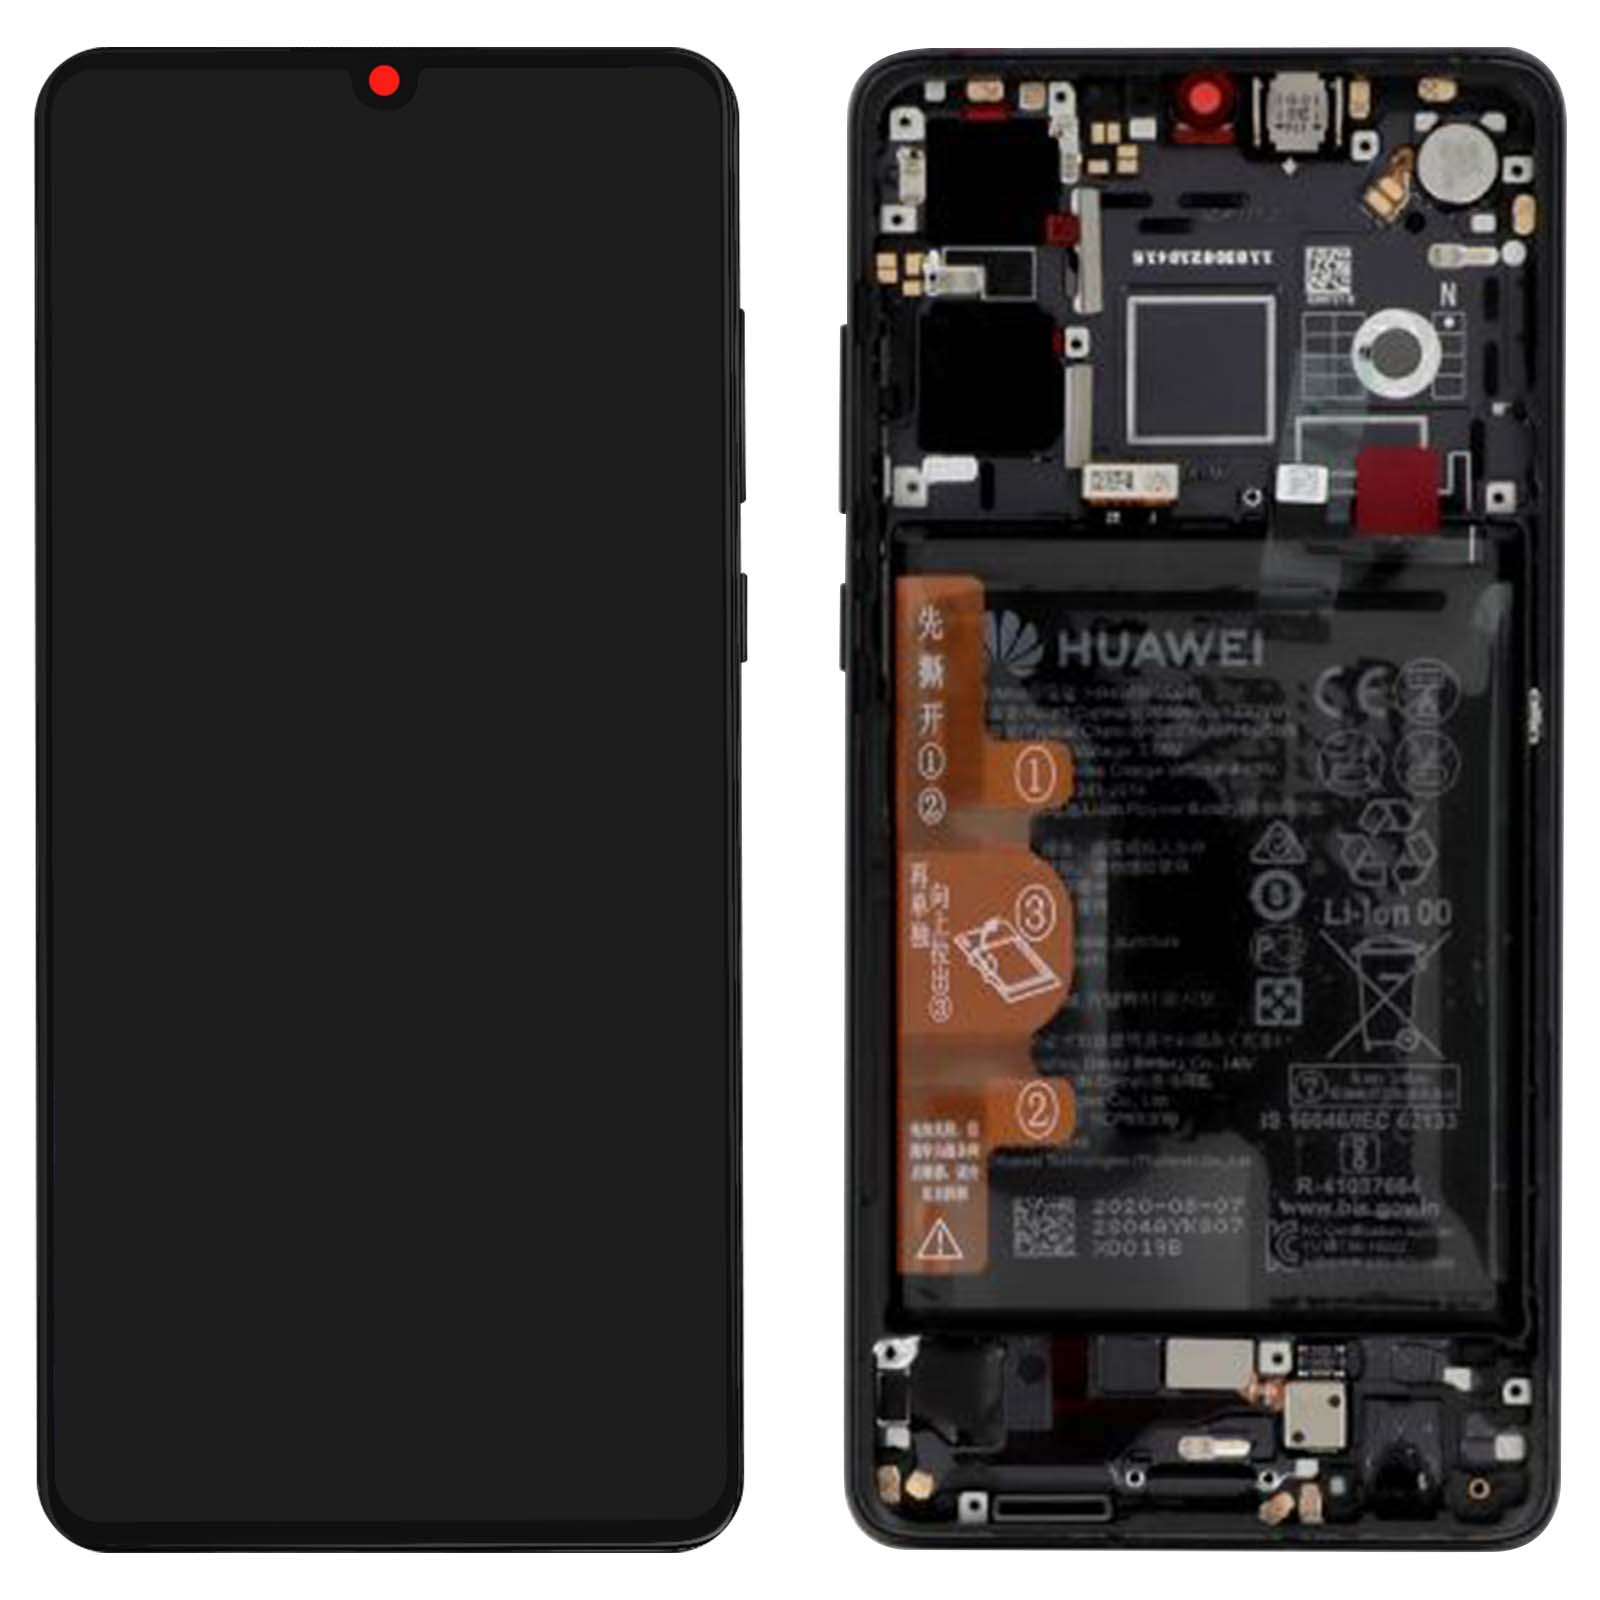 Bloc complet d'origine Huawei : Écran LCD Tactile avec Batterie intégrée  3340 mAh - Noir p. Huawei P30 Lite - Français